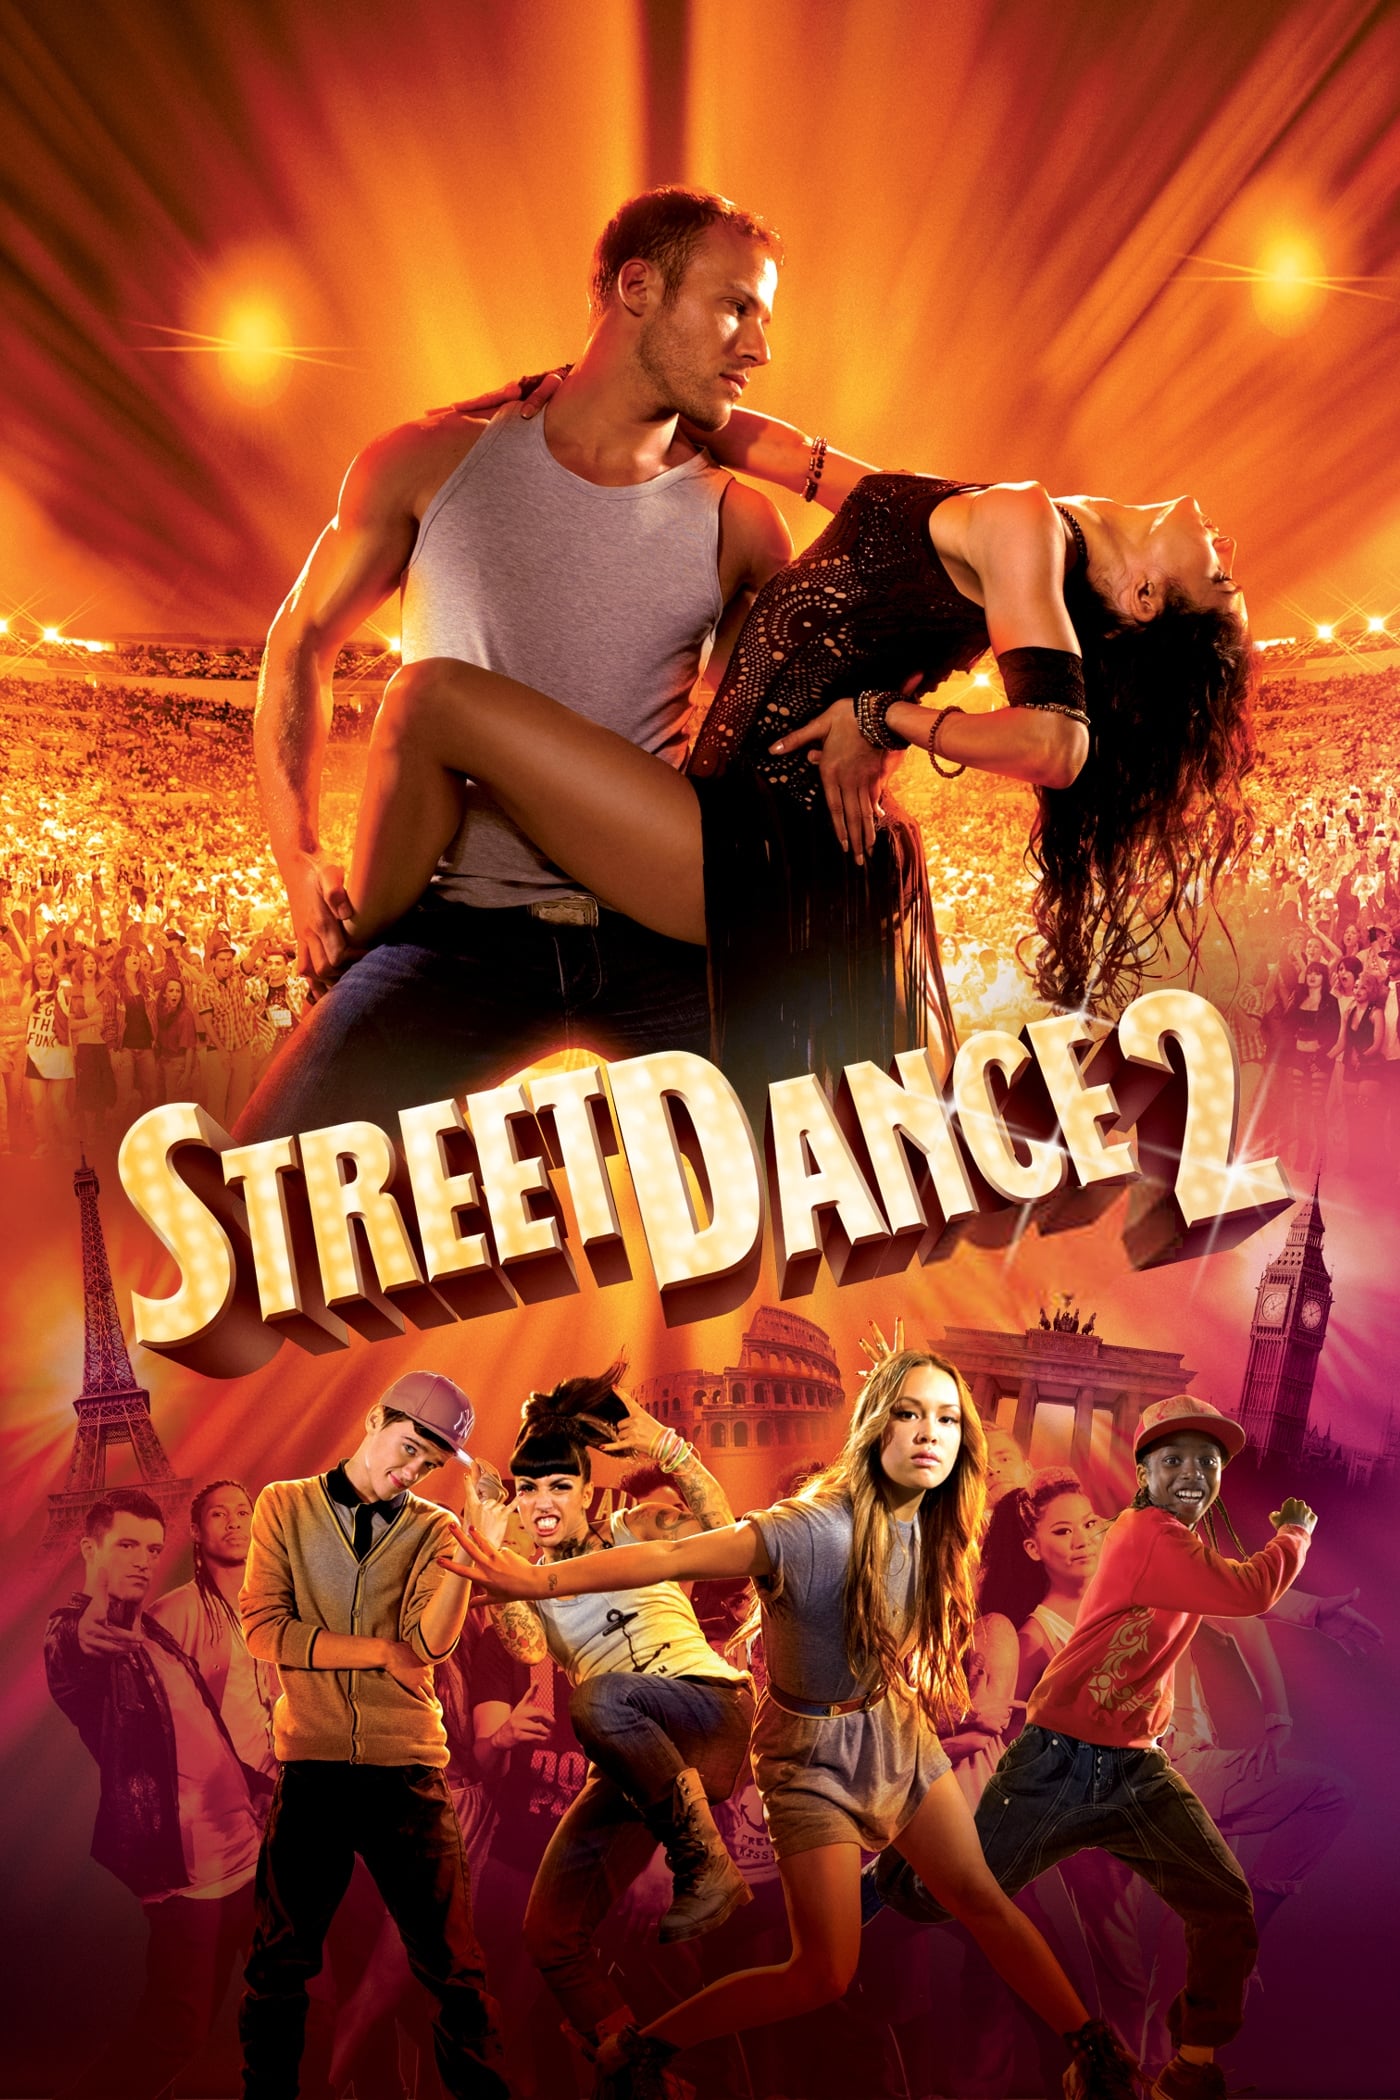 Street Dance - Duas Vezes Mais Quente (2012)